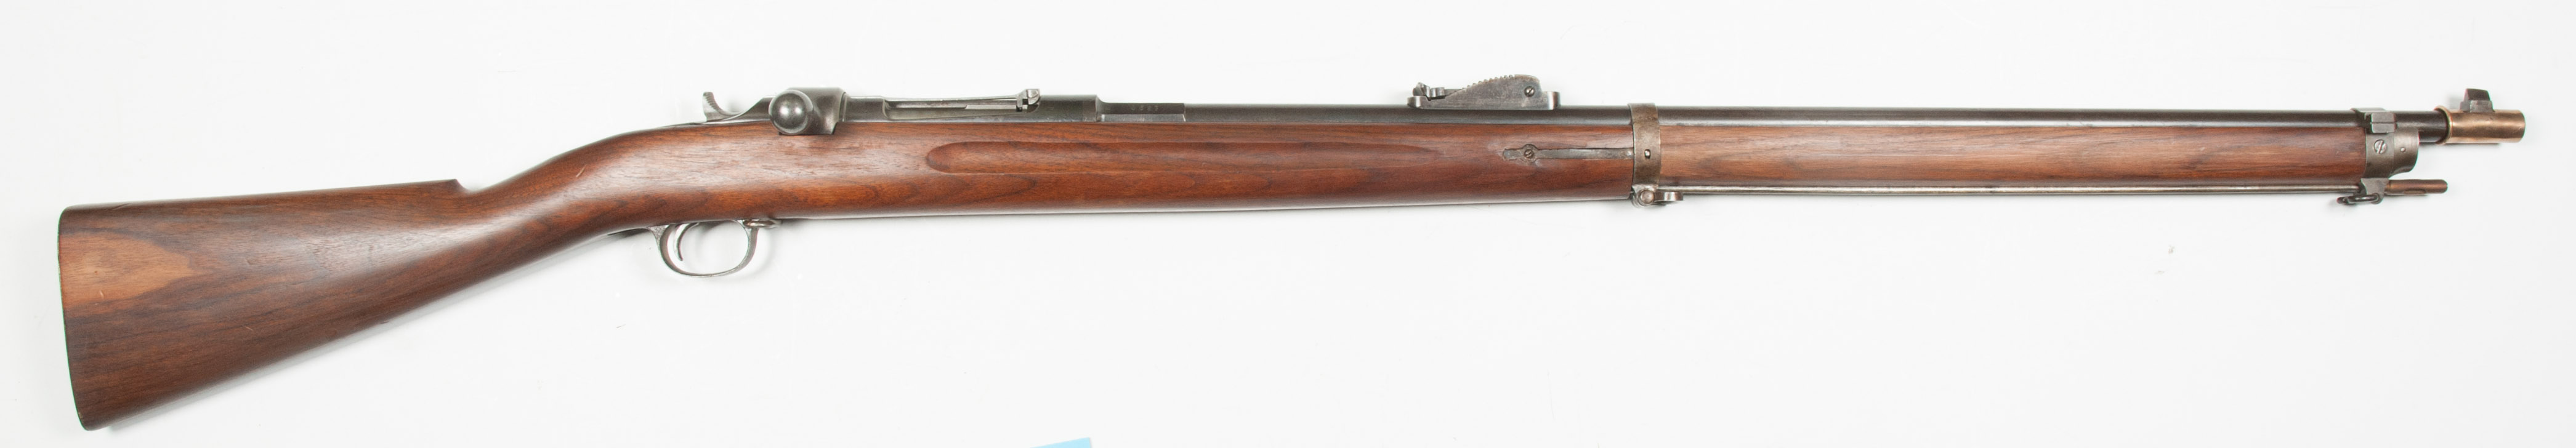 ./guns/rifle/bilder/Rifle-Kongsberg-Jarmann-M1887-Marine-6148-1.jpg